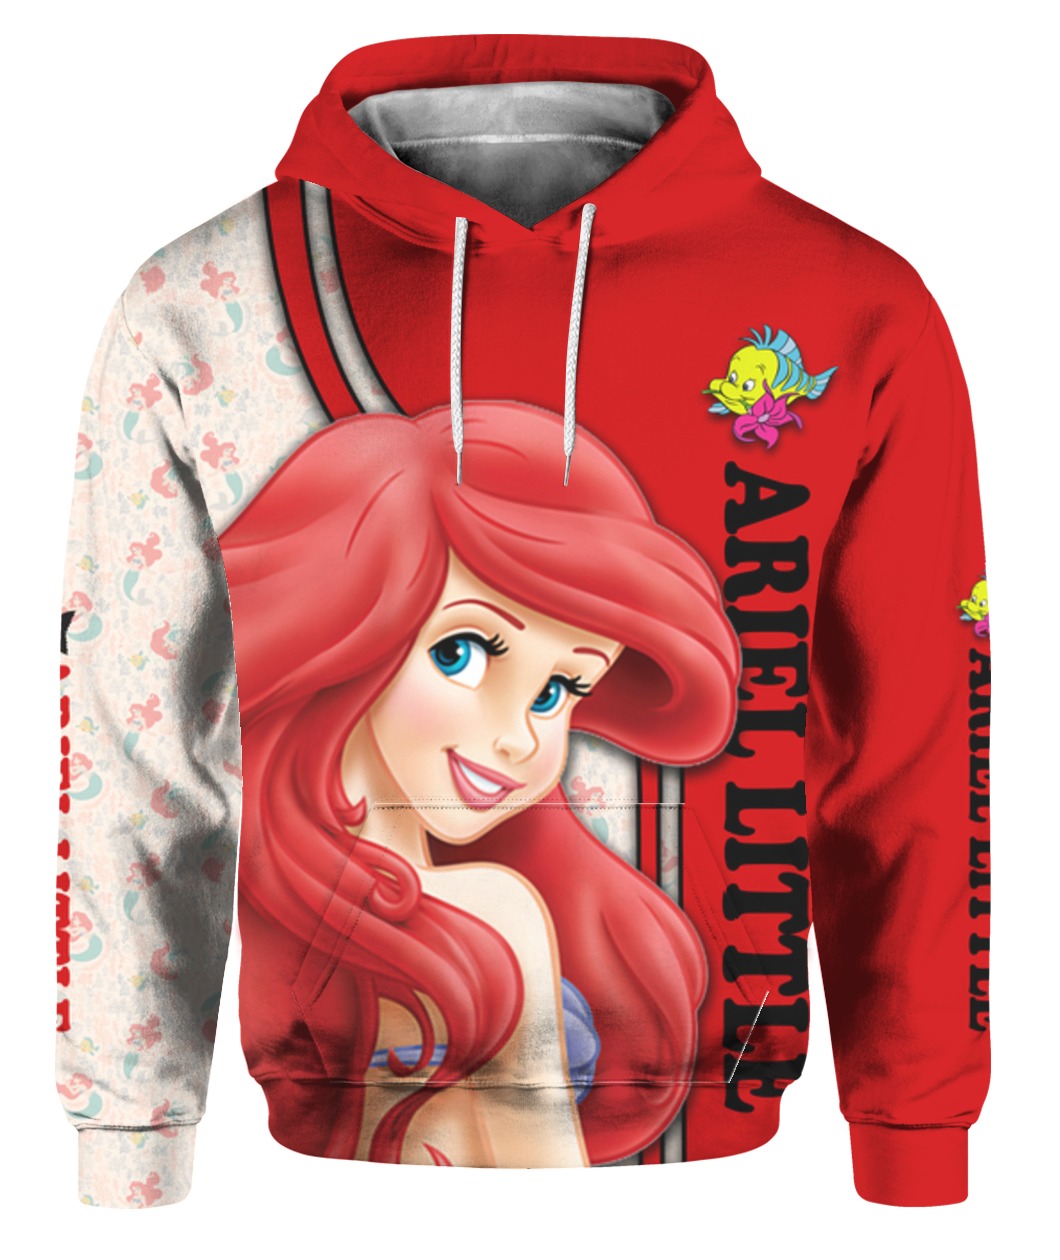 The little mermaid ariel all over printed hoodie